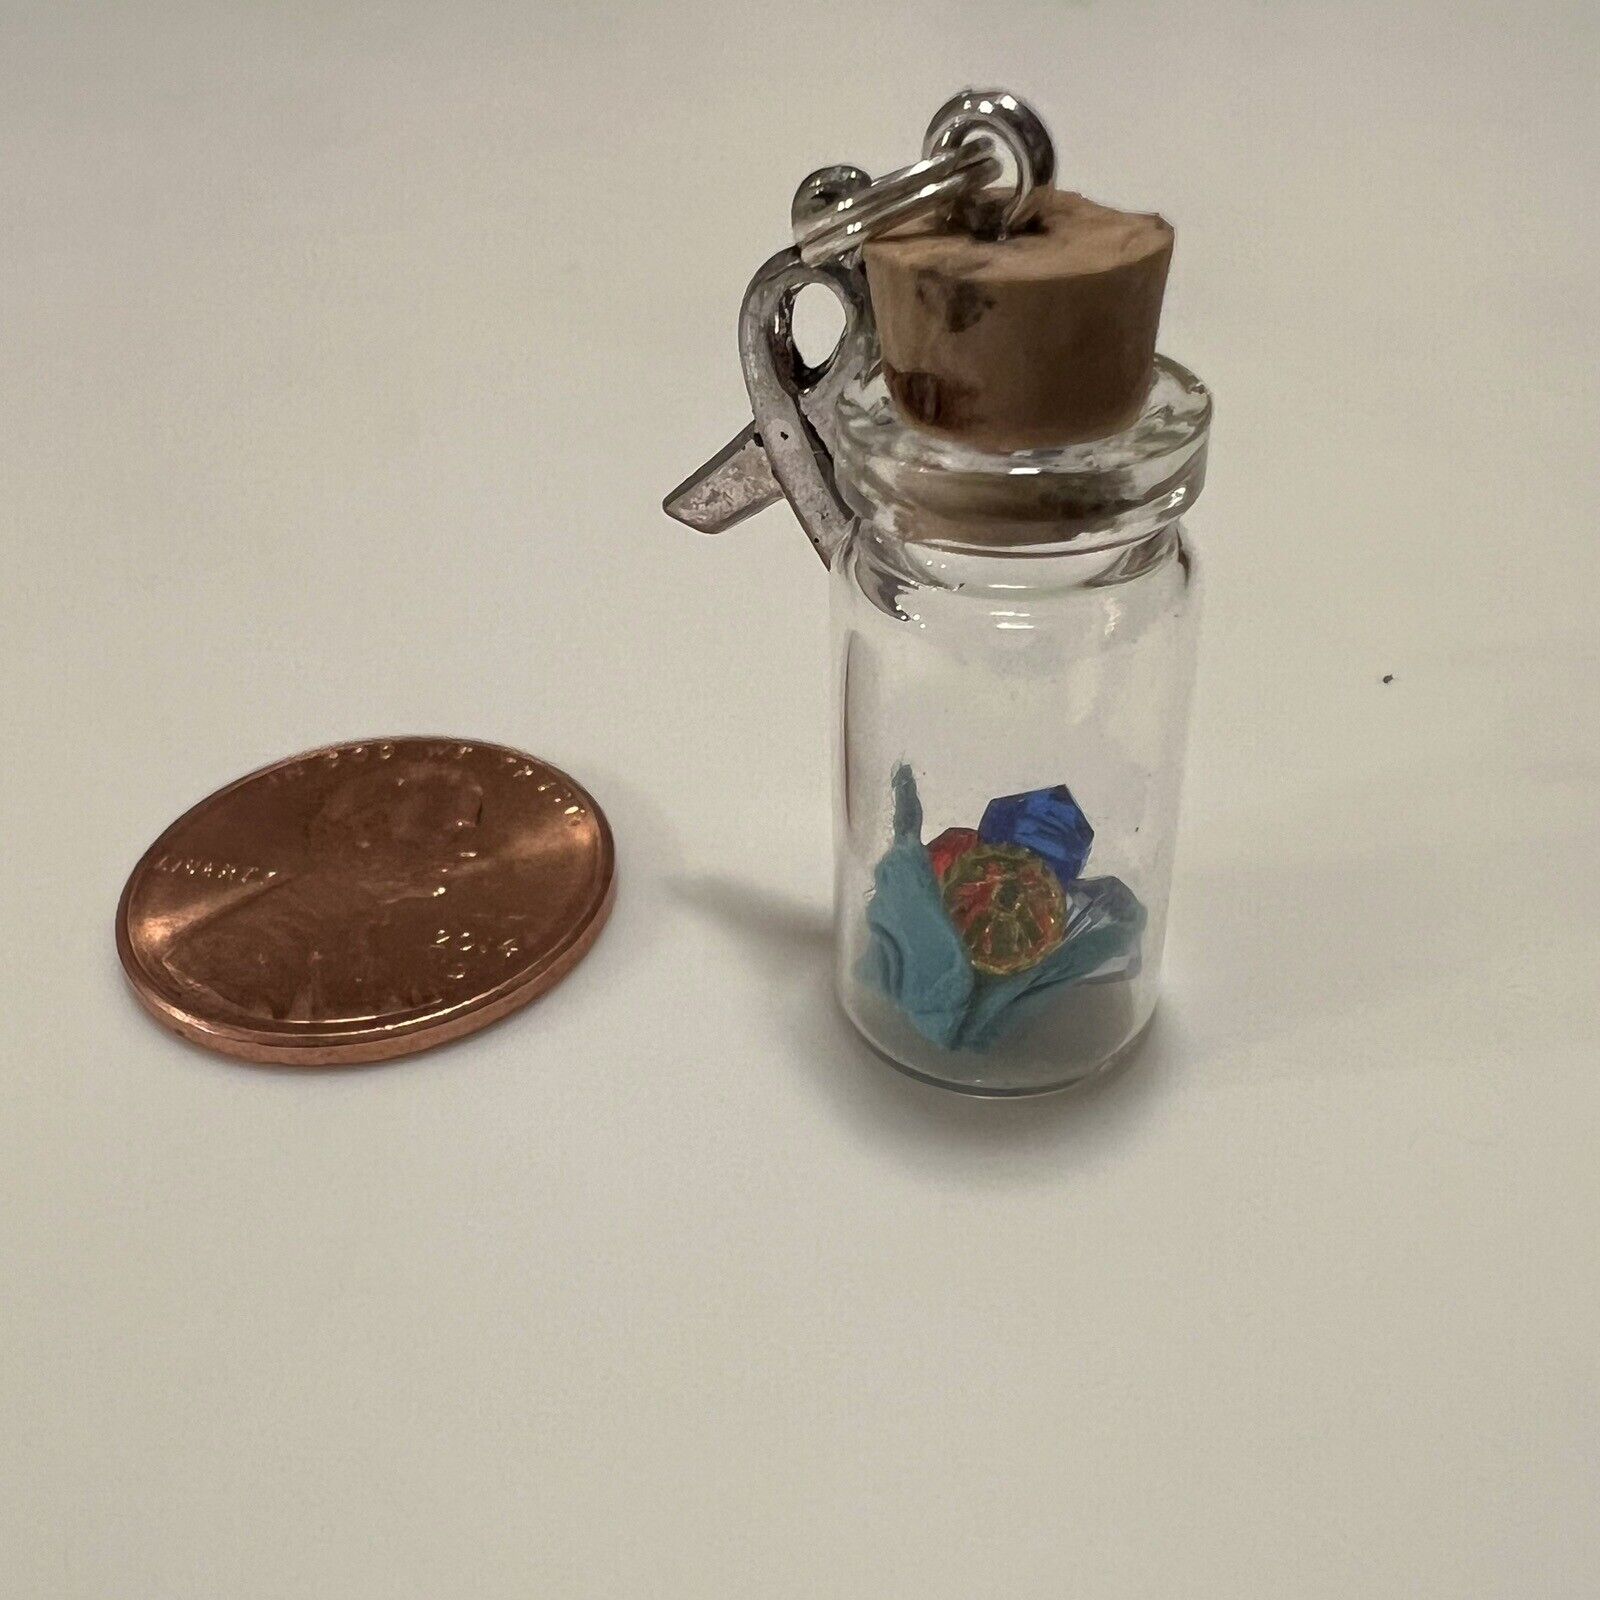 Swarovski Crystal Autism Keychain With Tiny Origami Crane Made By 10 Yr Old